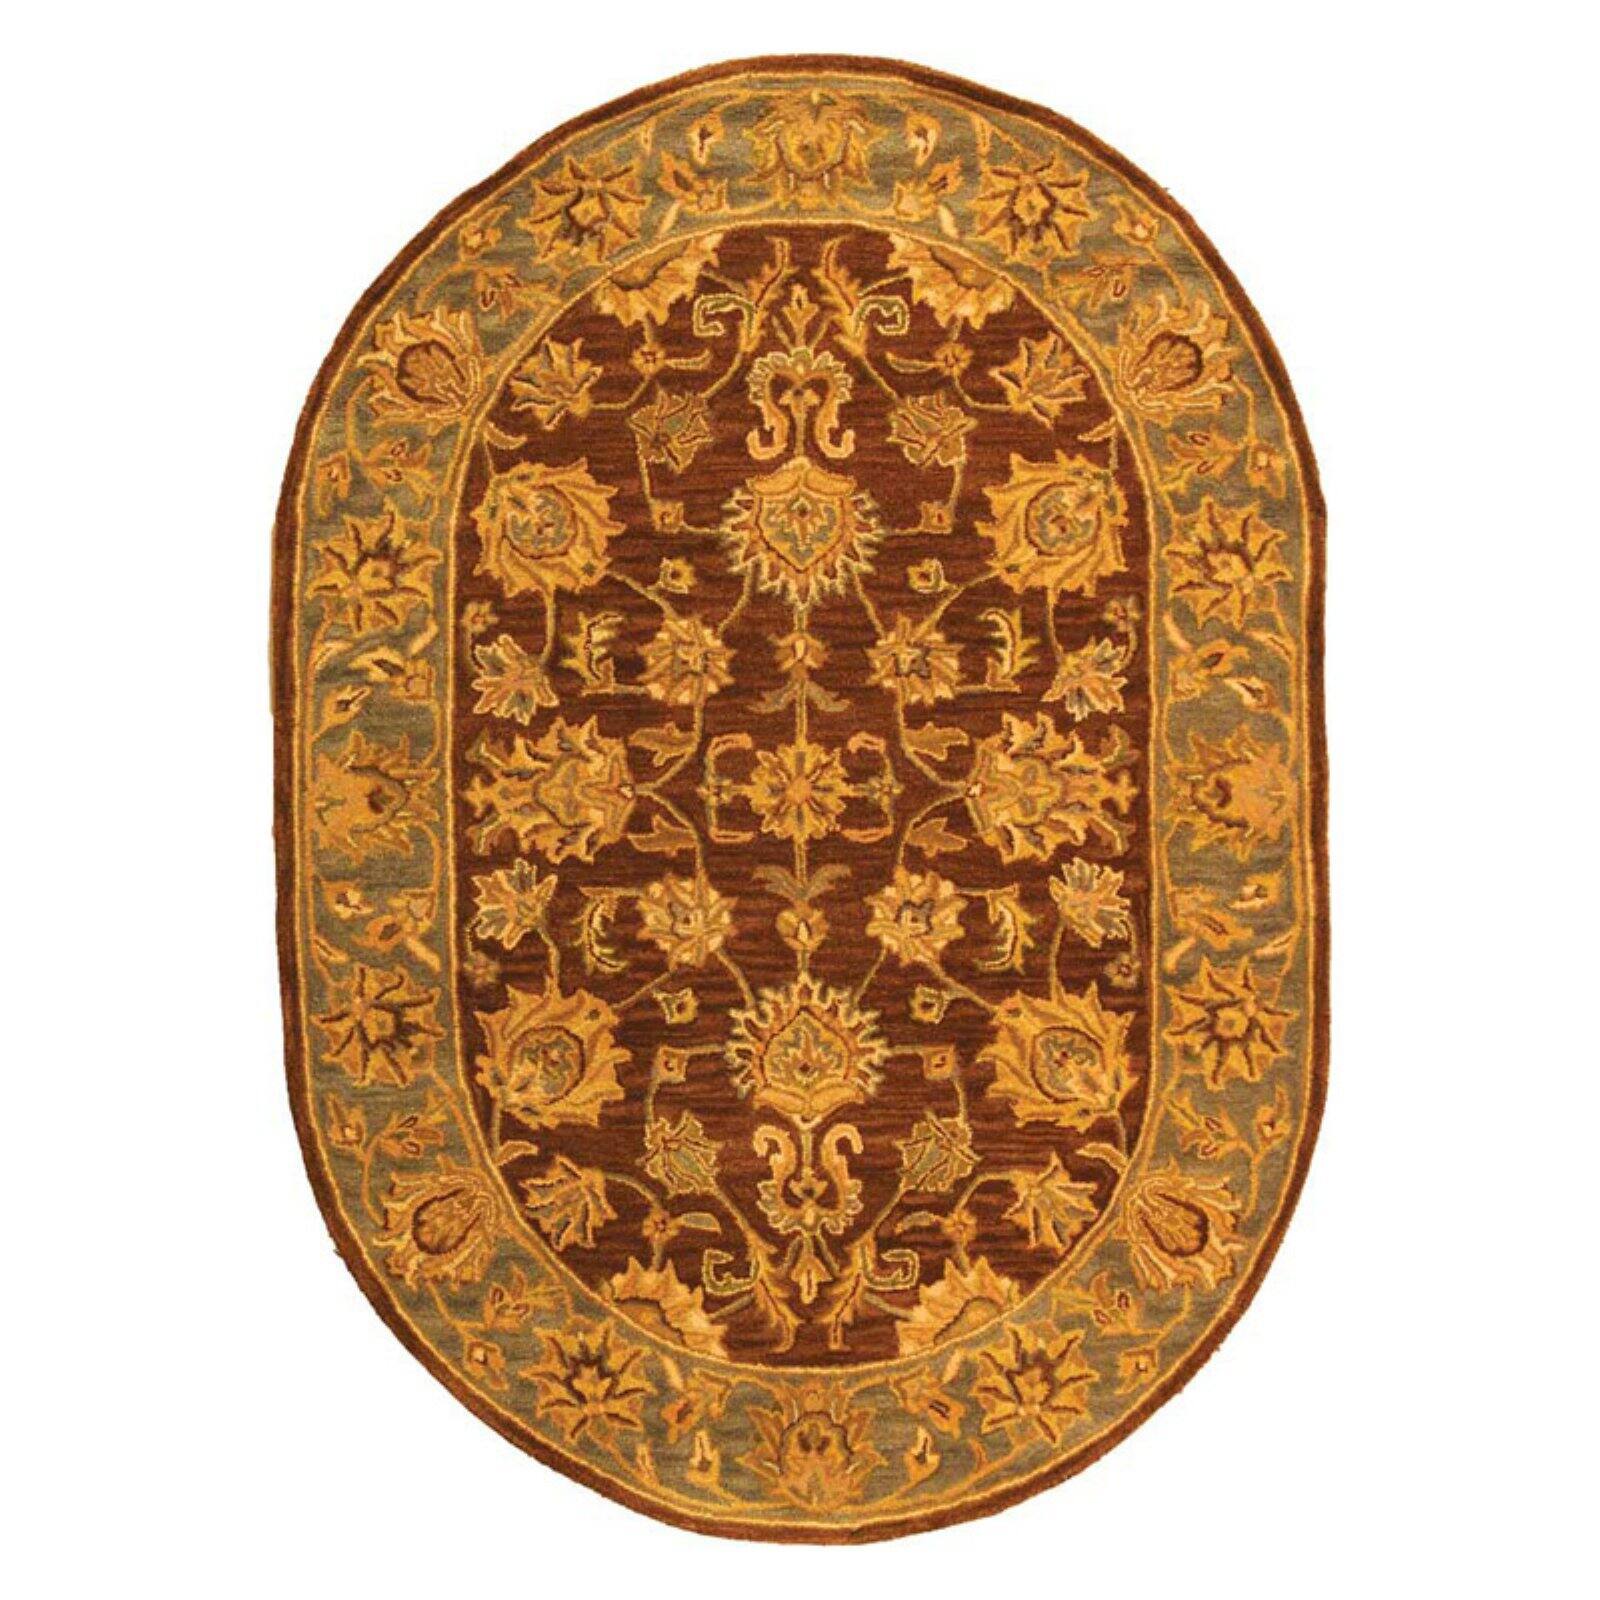 SAFAVIEH Heritage Regis Traditional Wool Area Rug, Brown/Blue, 8'3" x 11' - image 5 of 9